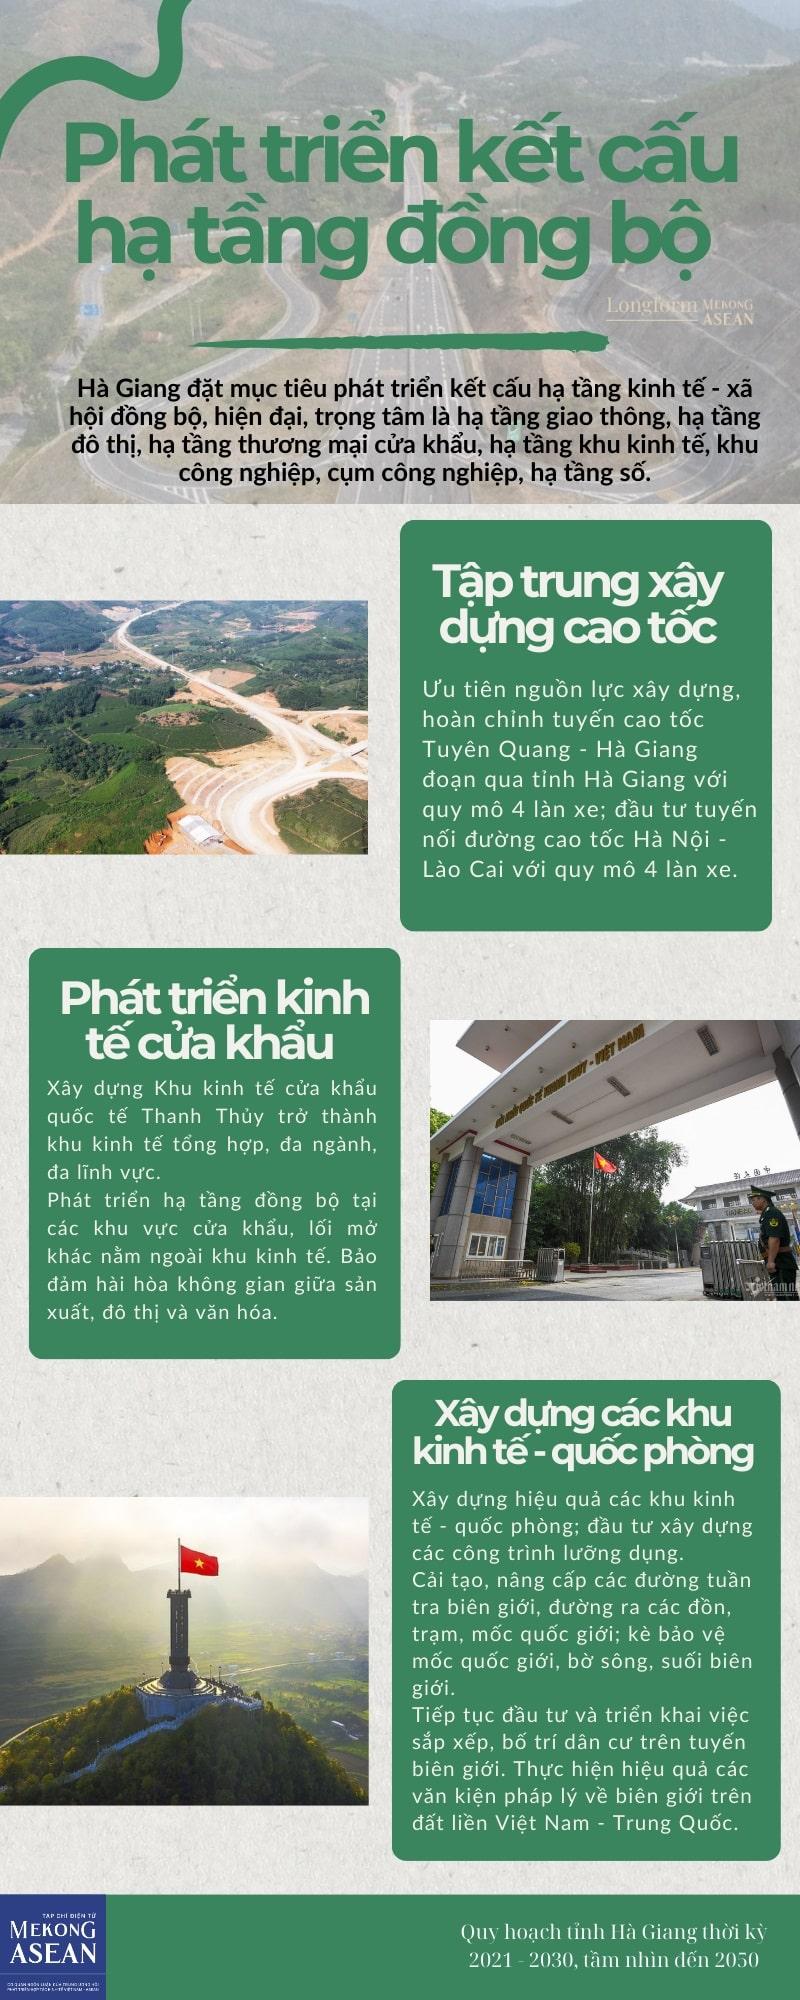 5 min 29 - Quy hoạch tỉnh Hà Giang, những điểm nhấn chiến lược